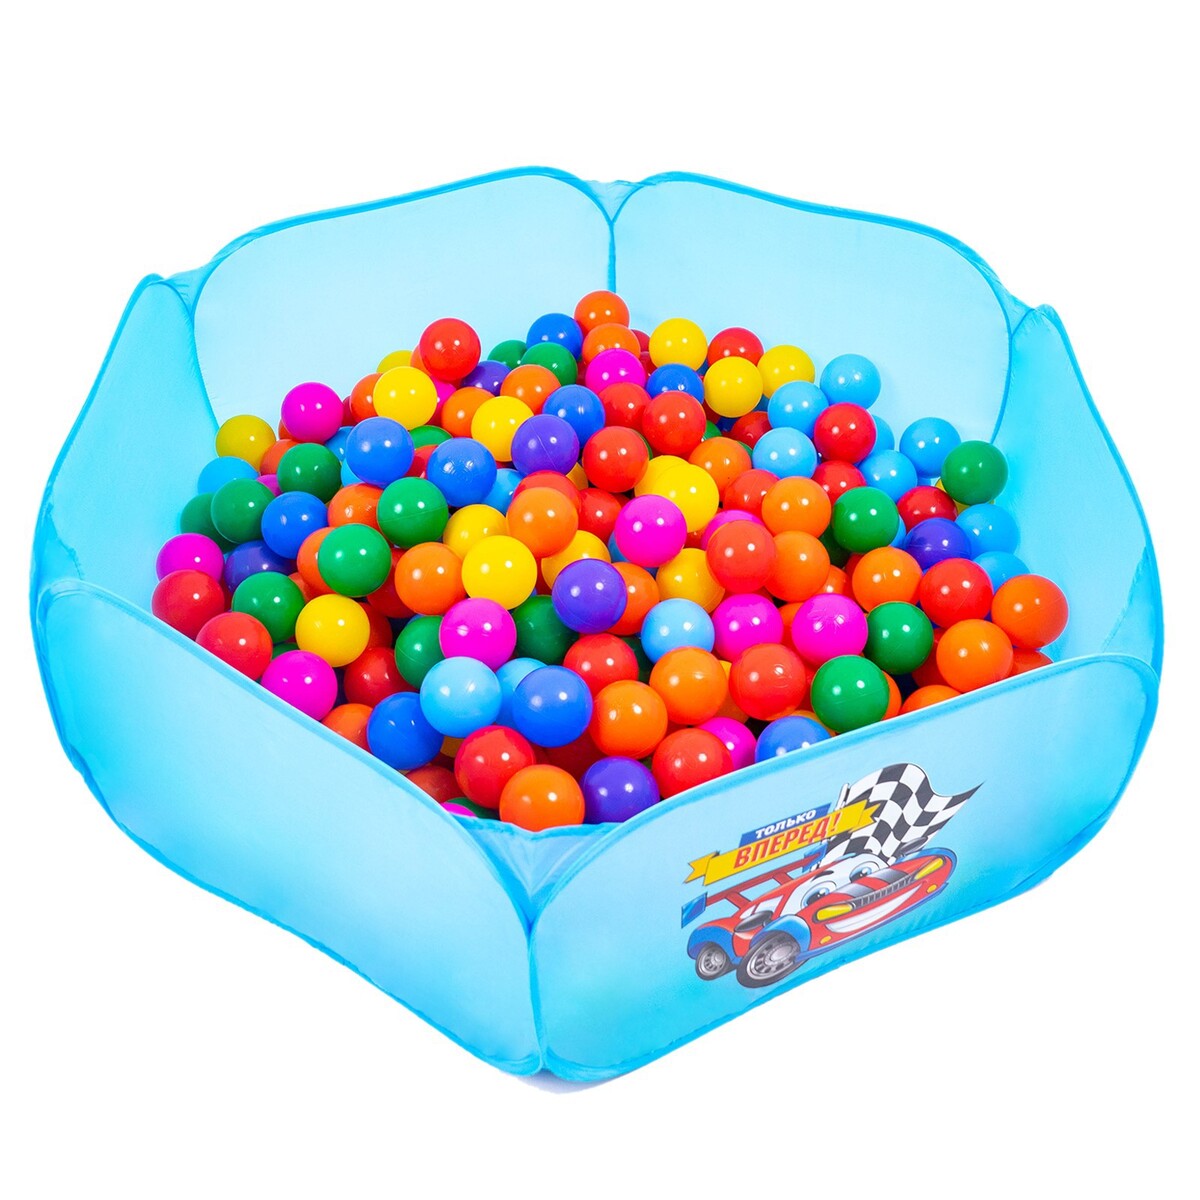 Шарики для сухого бассейна с рисунком, диаметр шара 7,5 см, набор 60 штук, разноцветные шарики для сухого бассейна соломон диаметр 5 см 150 шт